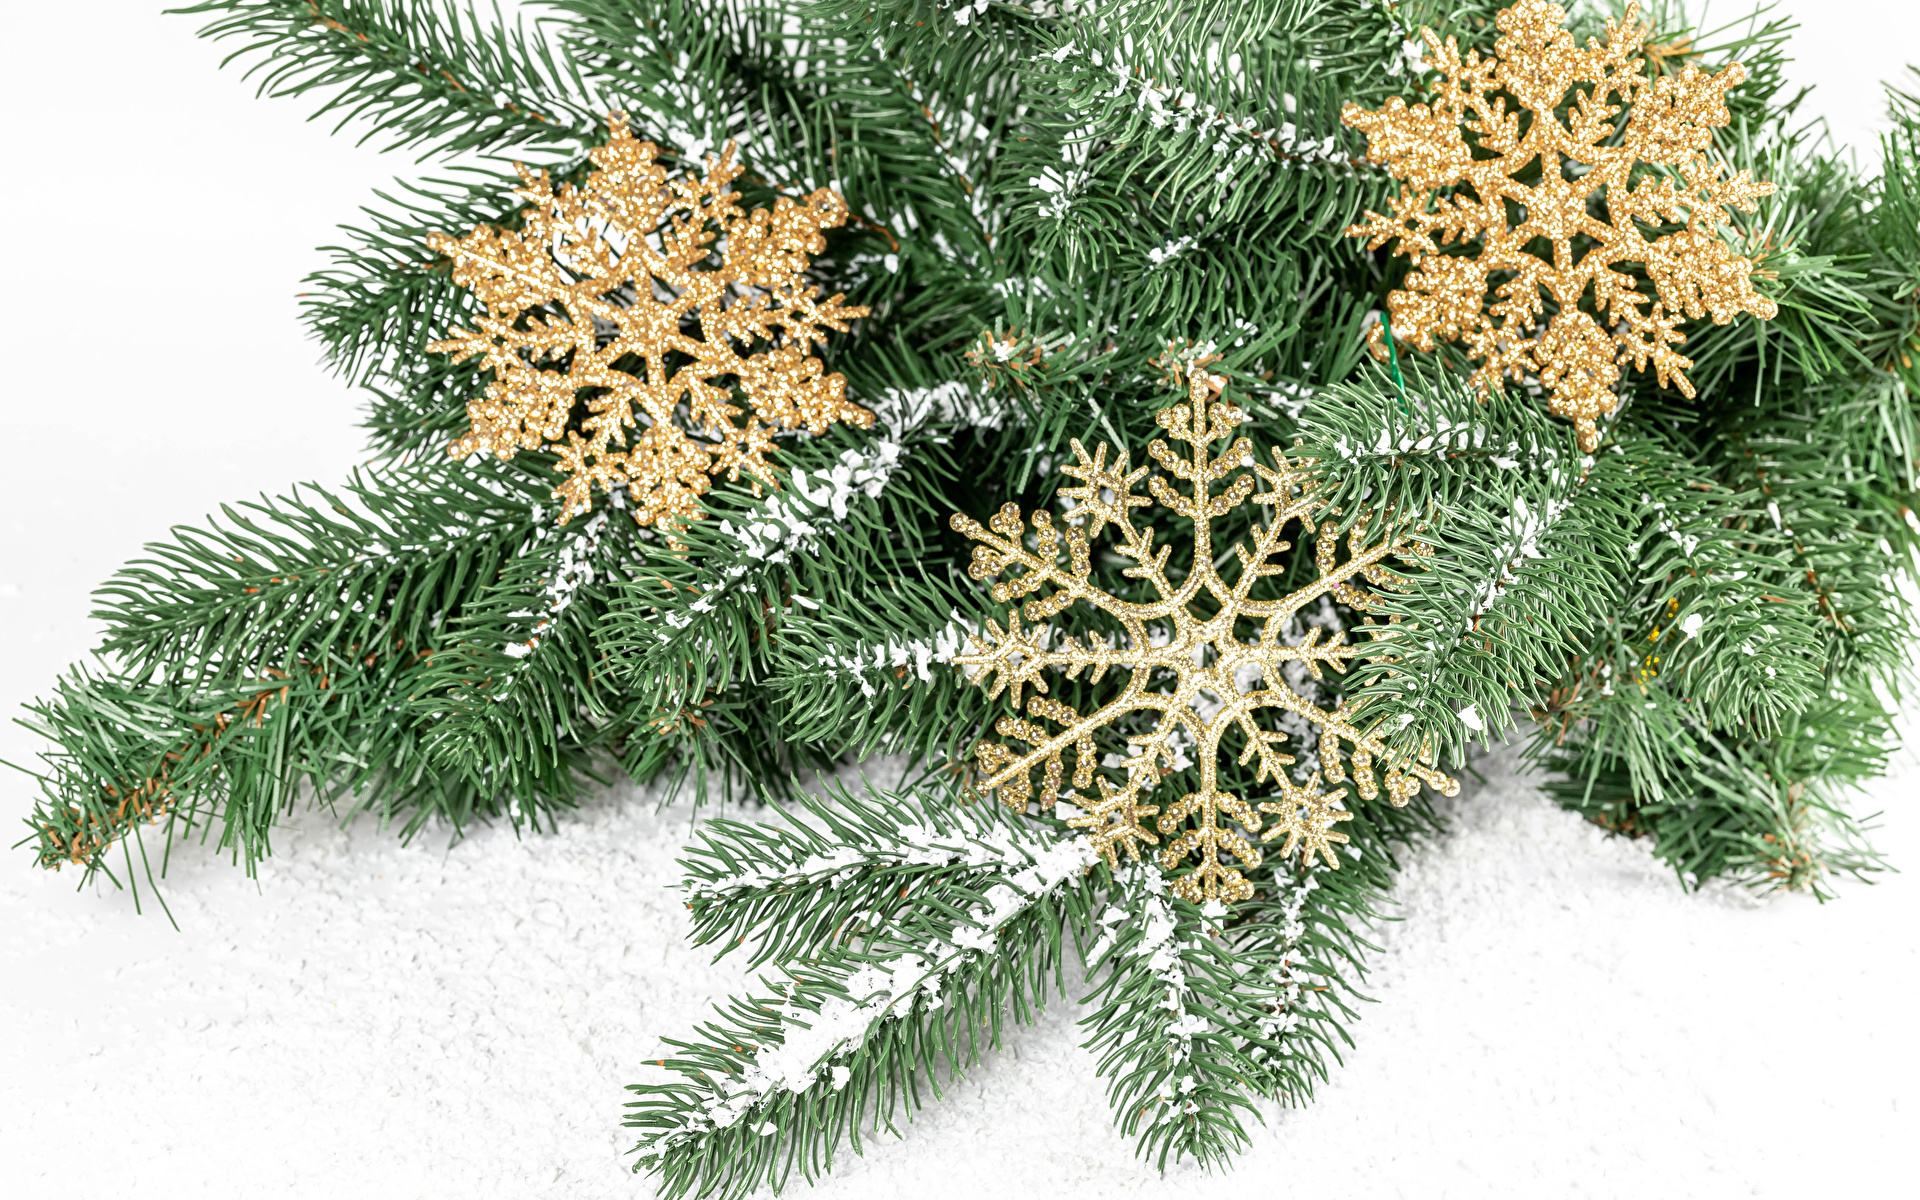 Фотографии Рождество снежинка снегу на ветке белом фоне 1920x1200 Новый год Снежинки Снег снега снеге ветвь ветка Ветки Белый фон белым фоном